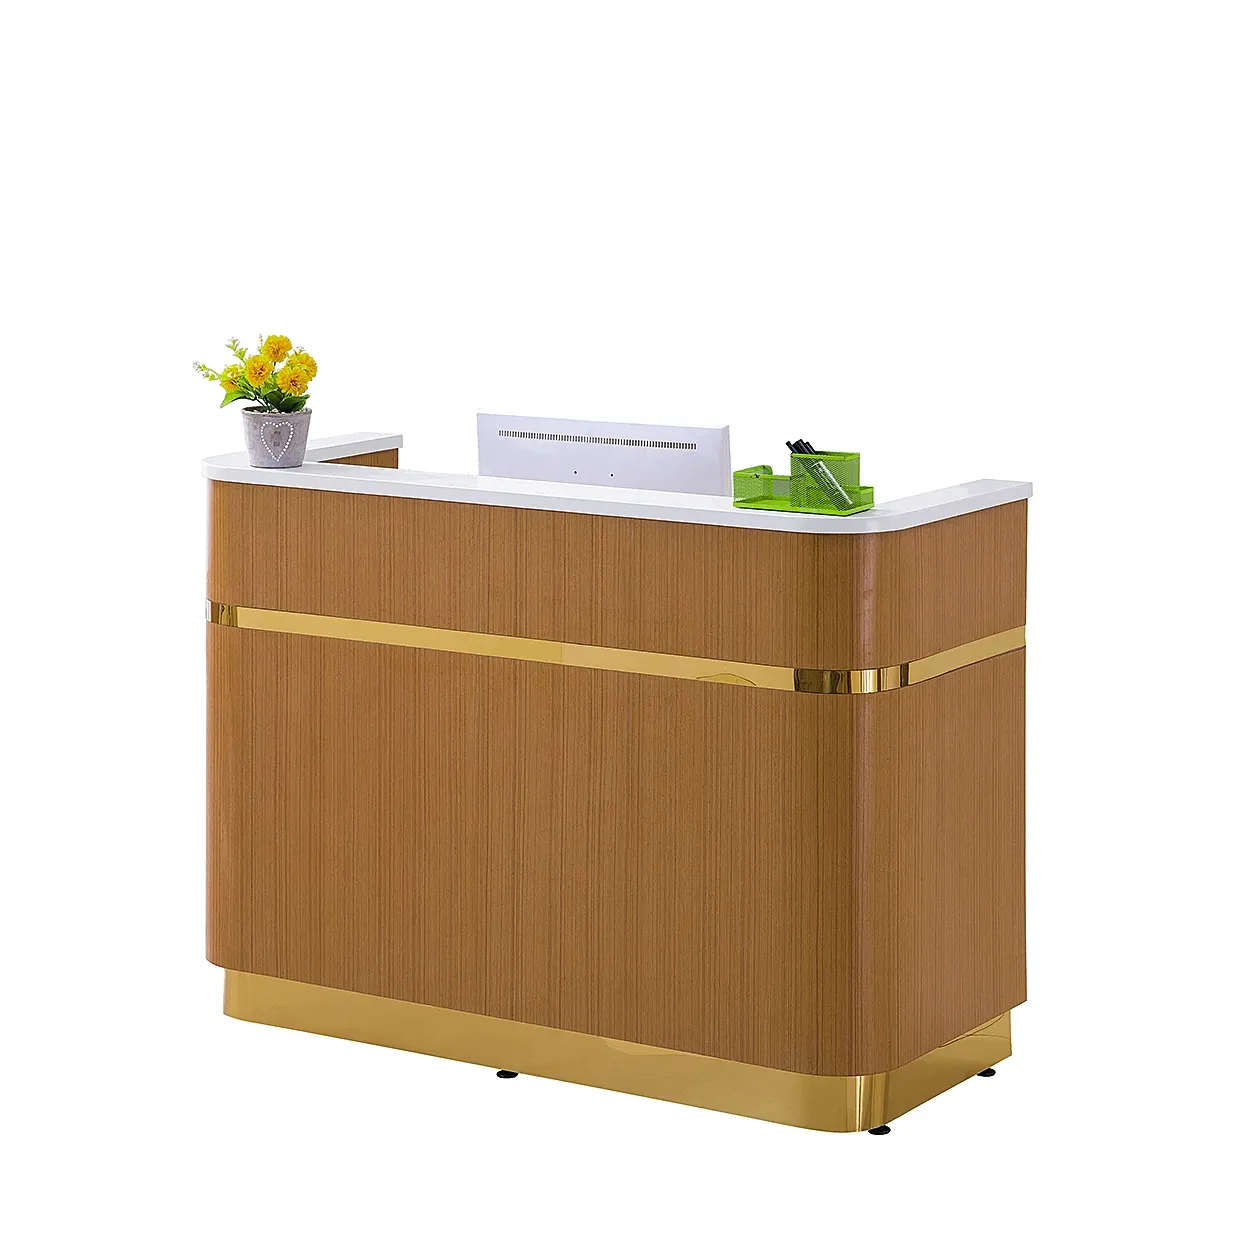 Hochwertiger Holzmaserung-Rezeptionstisch Büromöbel für Teehaus oder chinesisches Büro Front elegant hochwertige Schreibtische